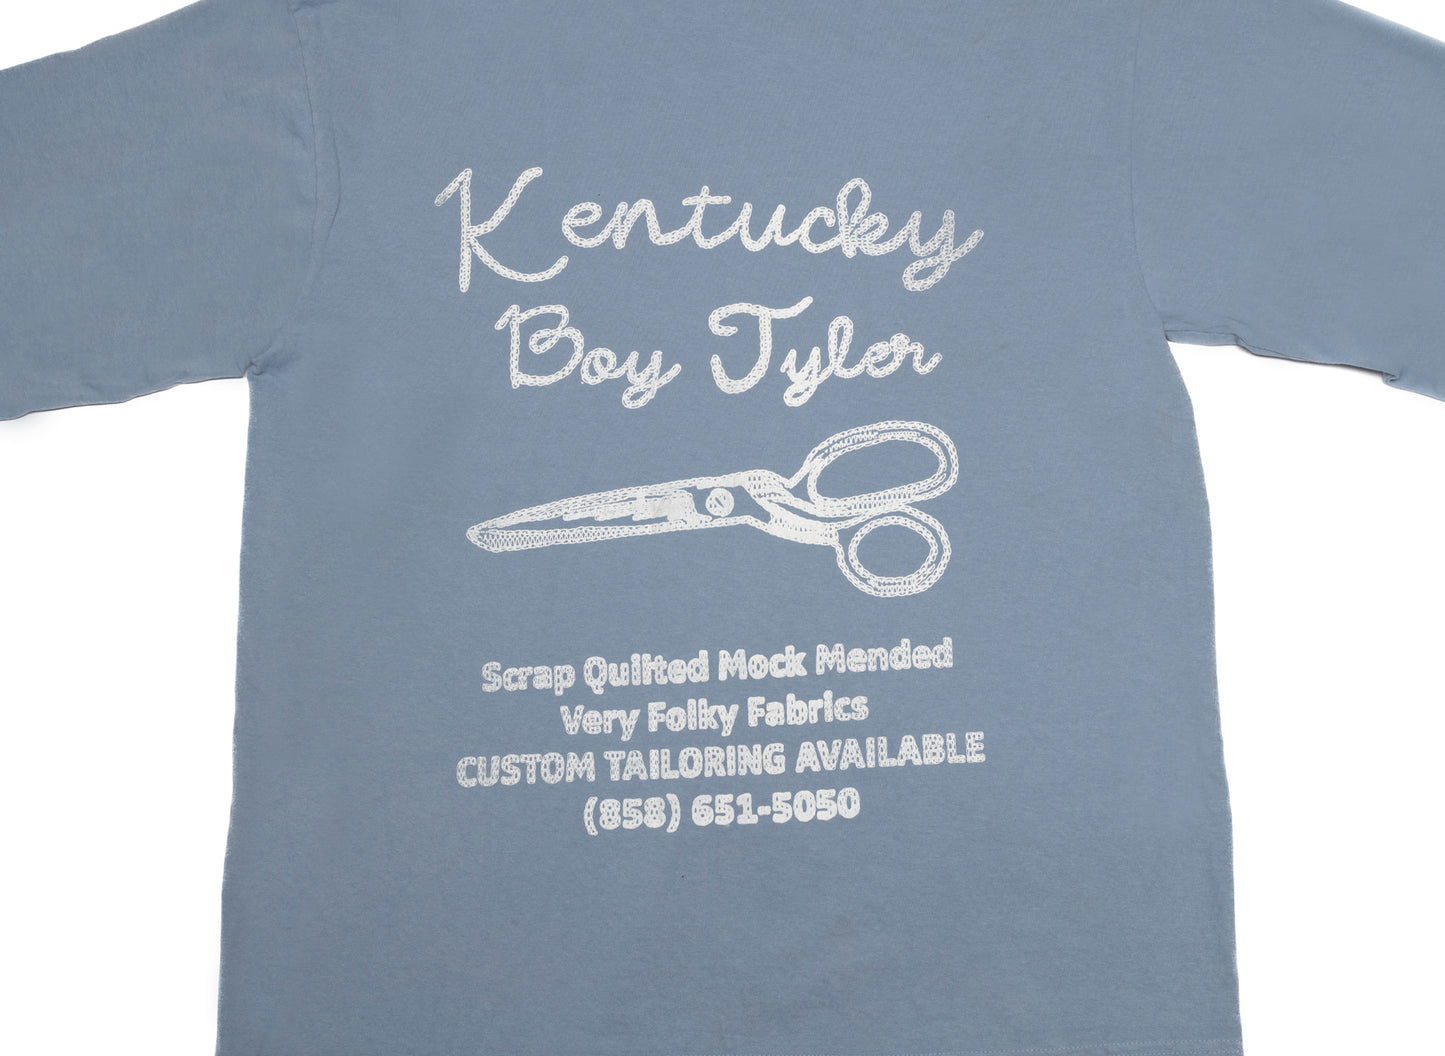 Kentucky Boy Tyler Call Me Long Sleeve Tee in Light Blue